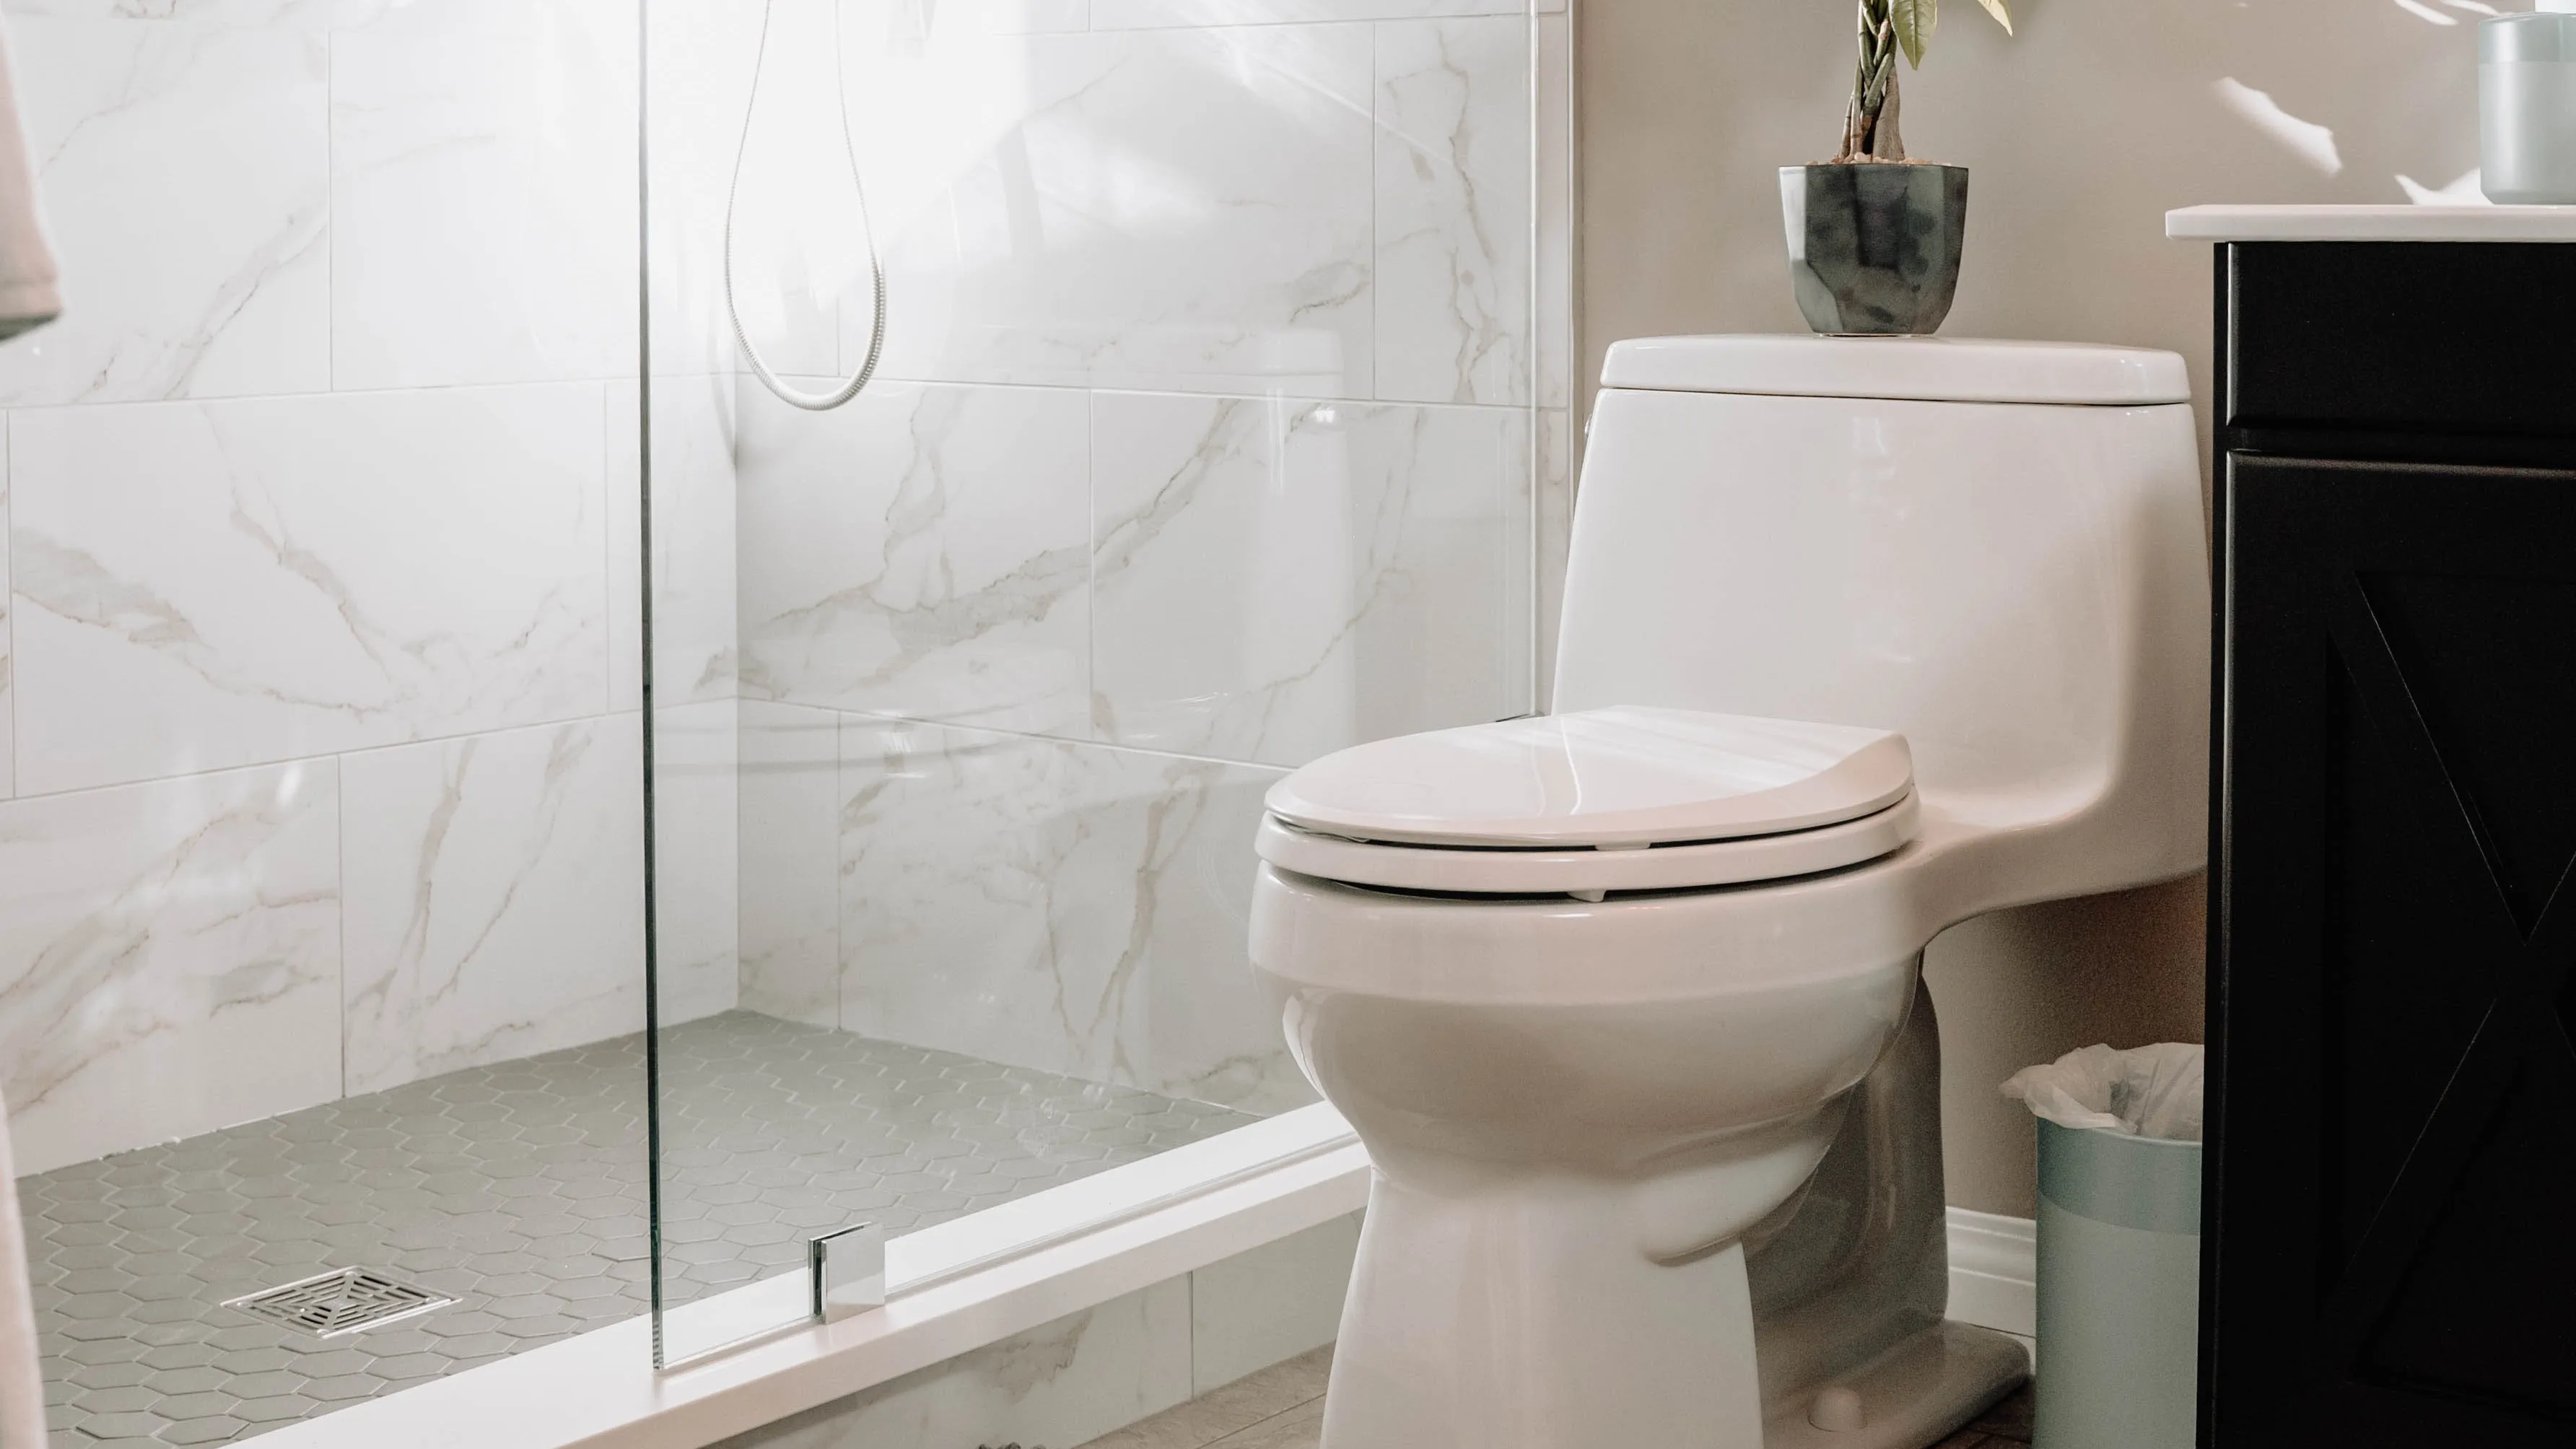 Toilette Verstopft Diese Tipps Hausmittel Helfen Wirklich